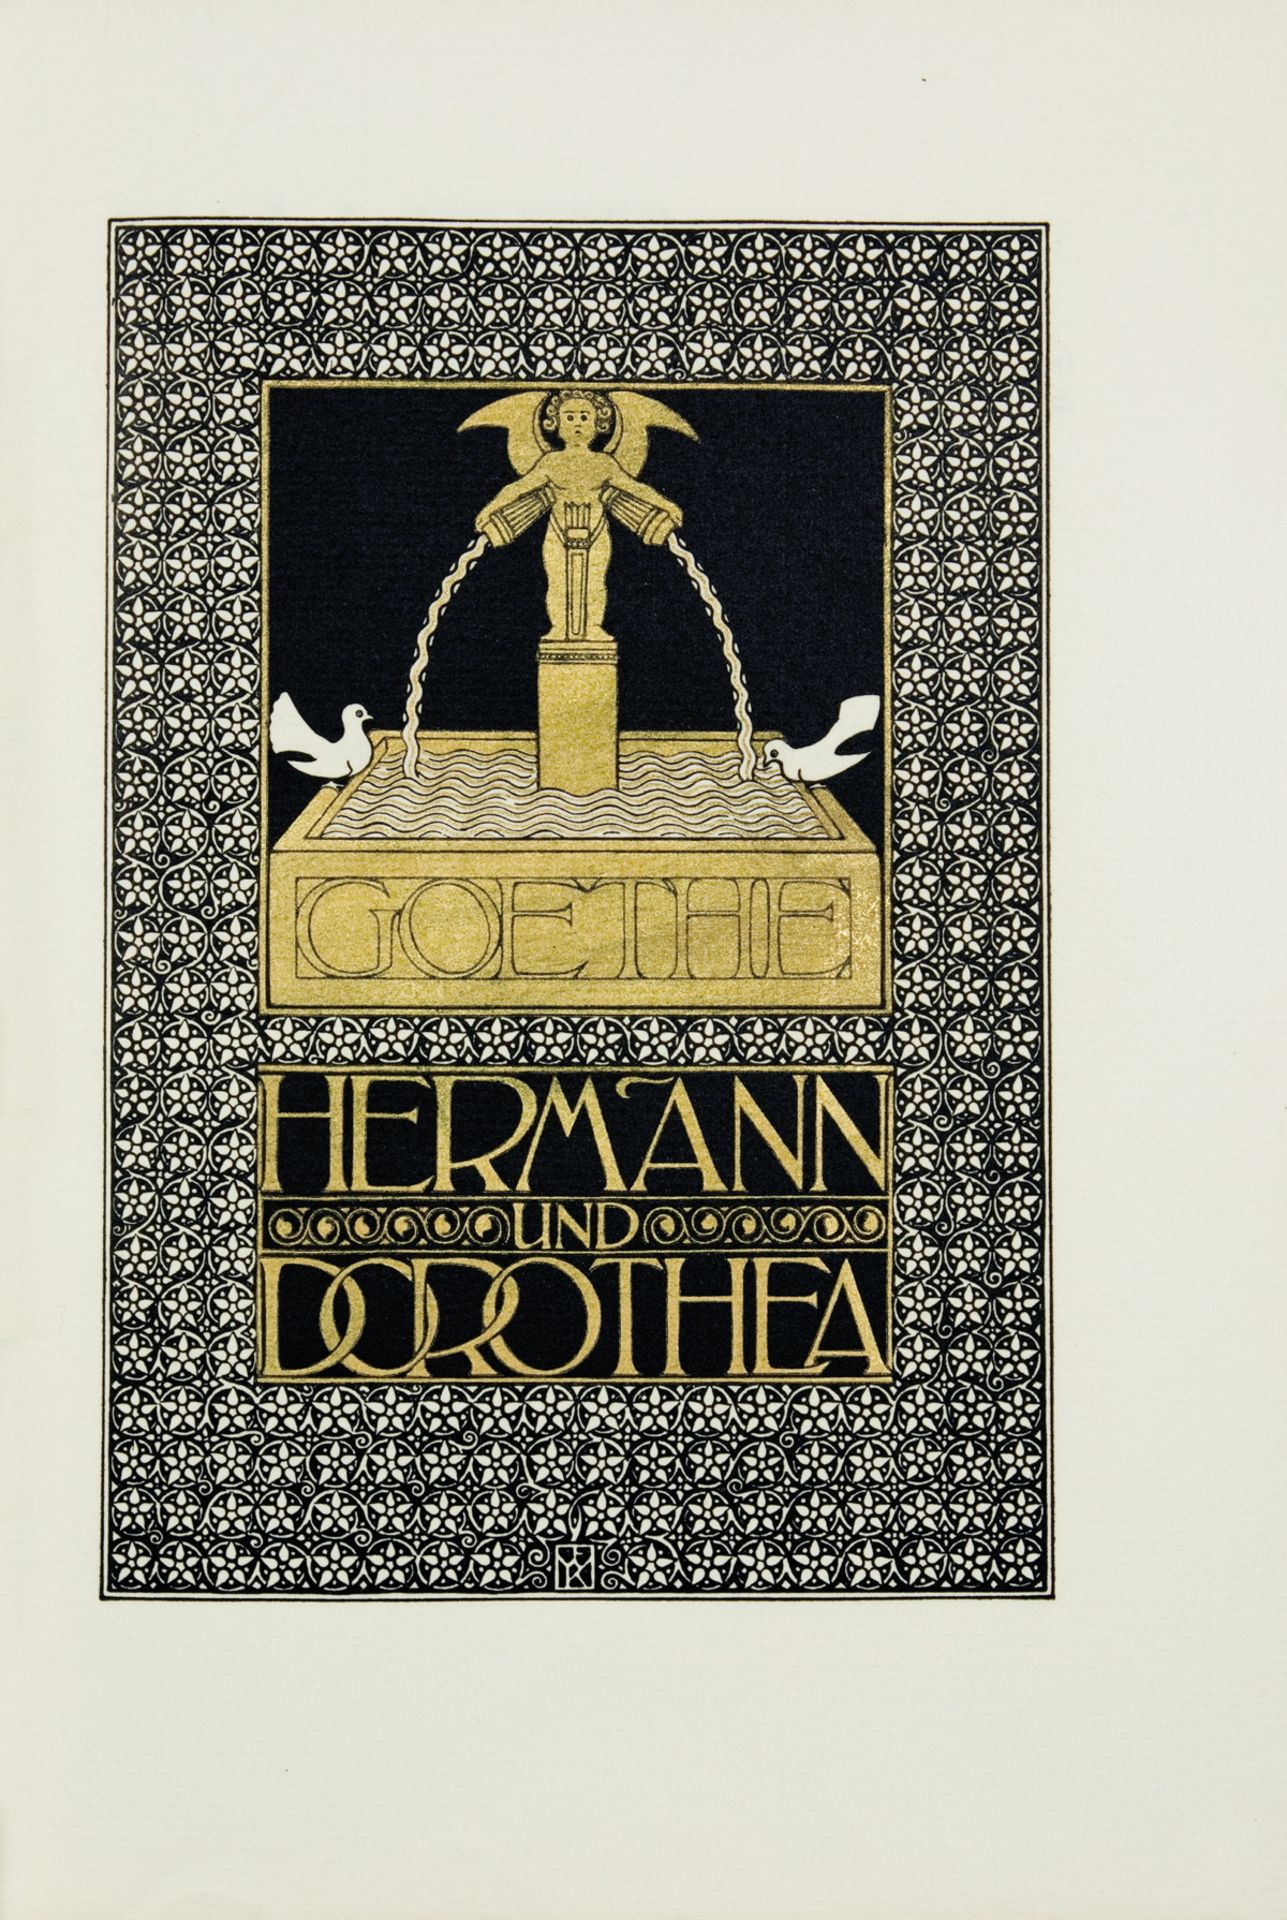 Ernst Ludwig-Presse - Goethe. Hermann und Dorothea. 1908 - Image 2 of 3